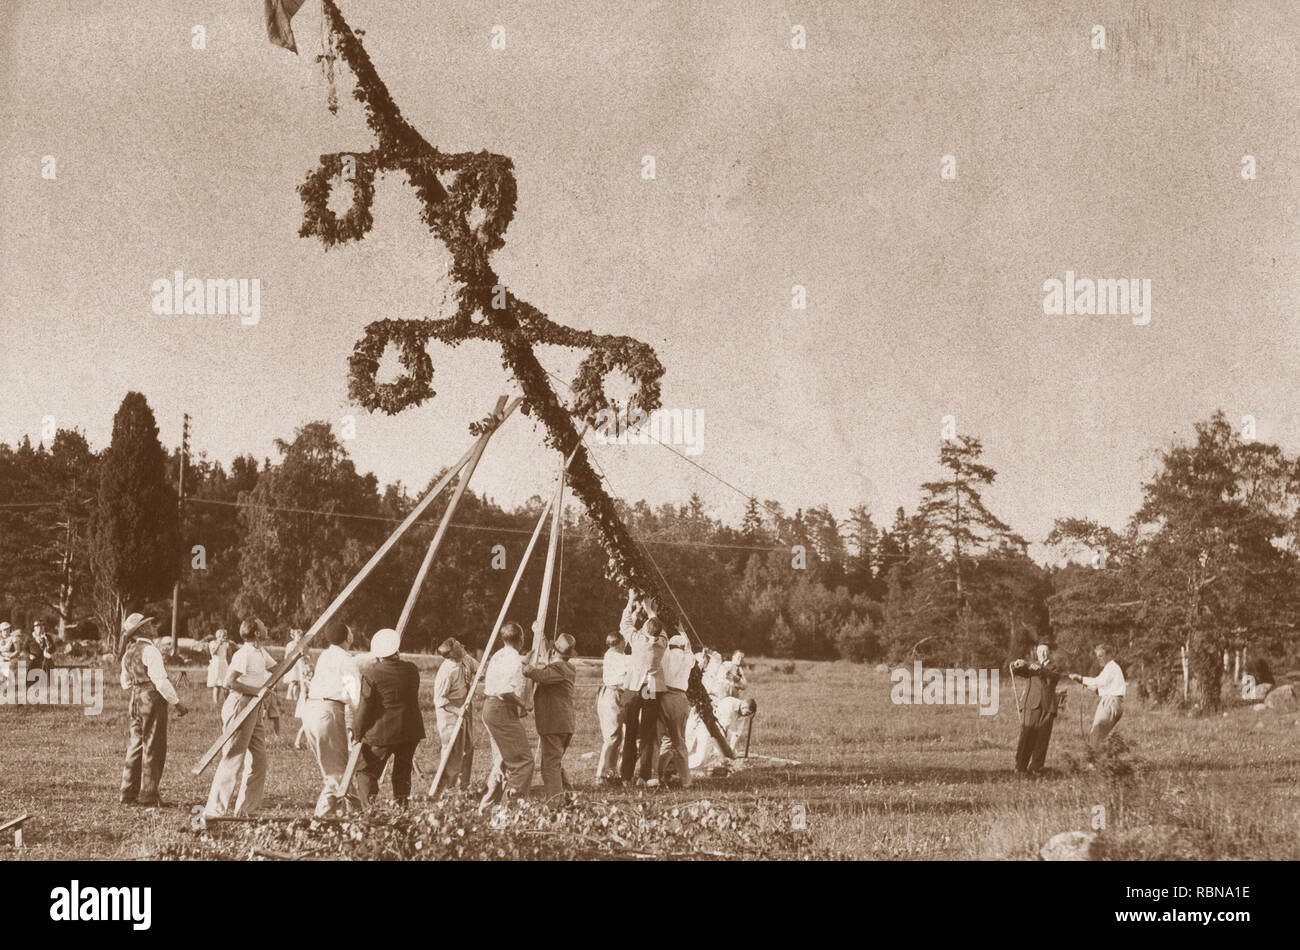 Songe d'une tradition dans les années 1930. Dans le cadre des festivités un Maypole est ressuscité et ici un groupe de personnes monte le poteau avant de commencer à danser autour de lui. Suède 1930. Banque D'Images